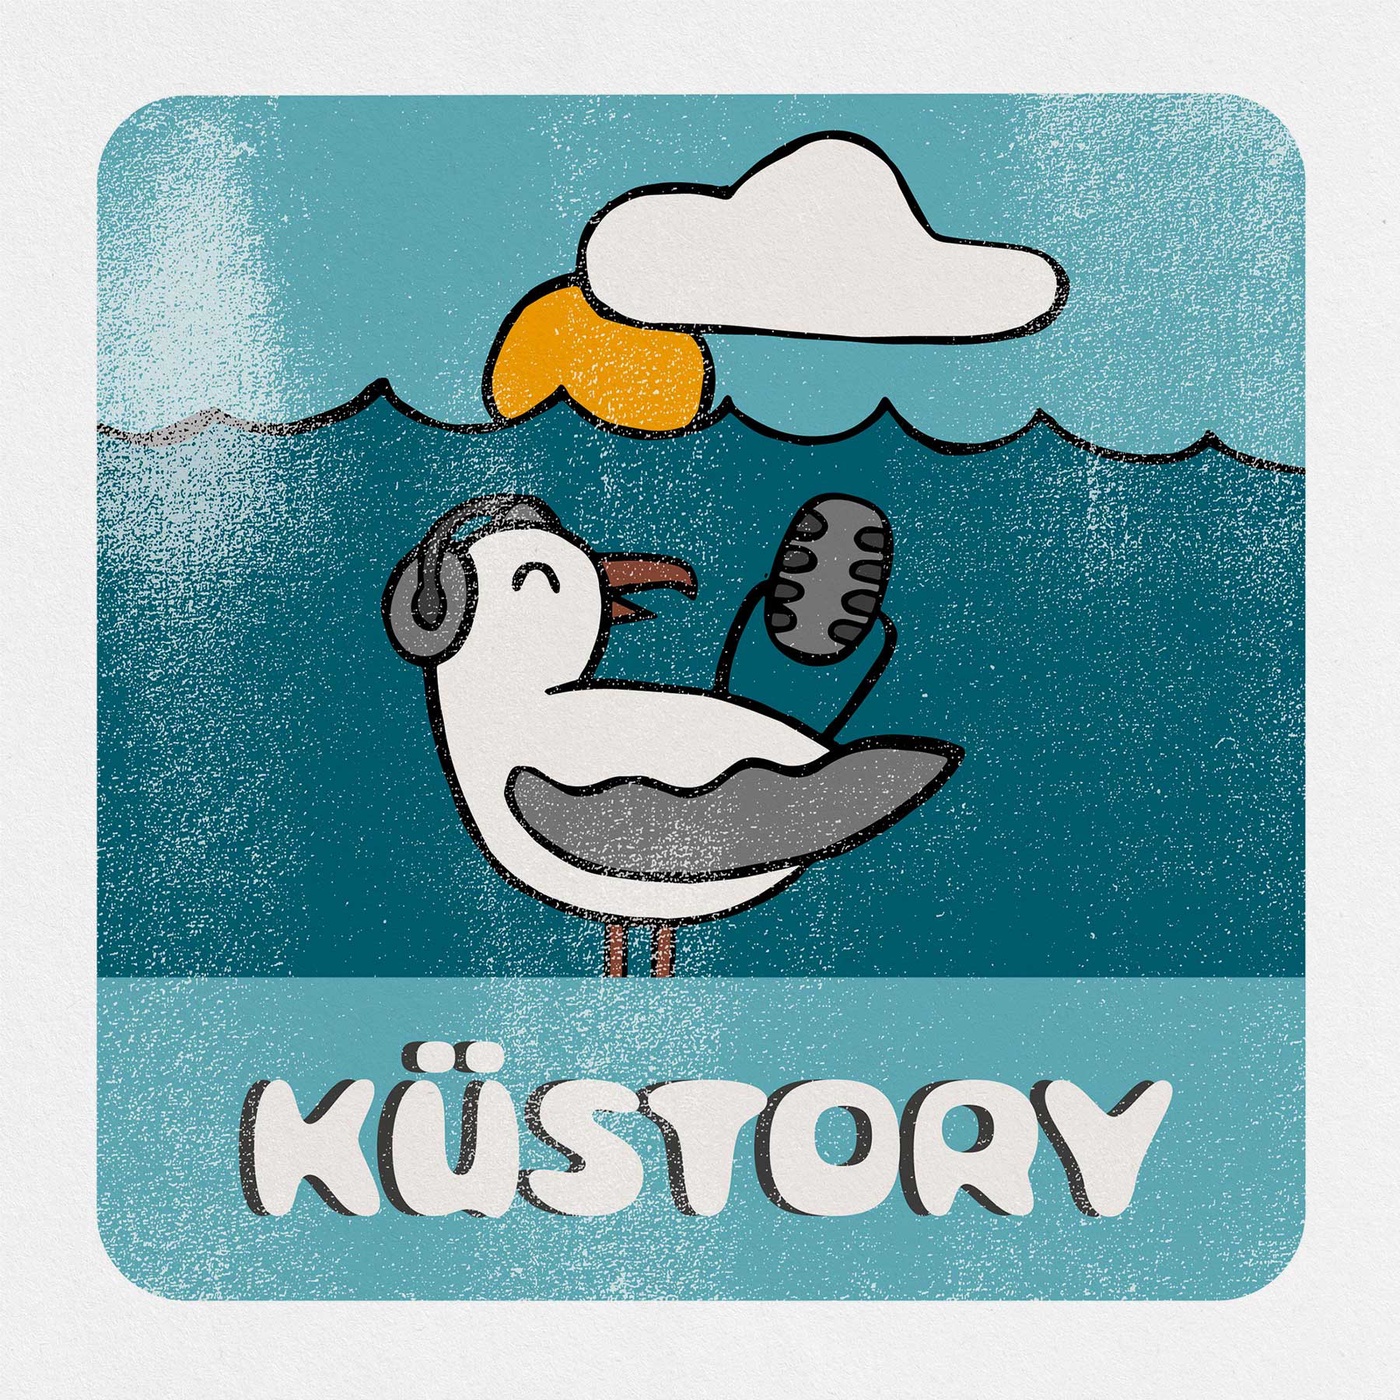 Küstory 3 | Made in Kiel